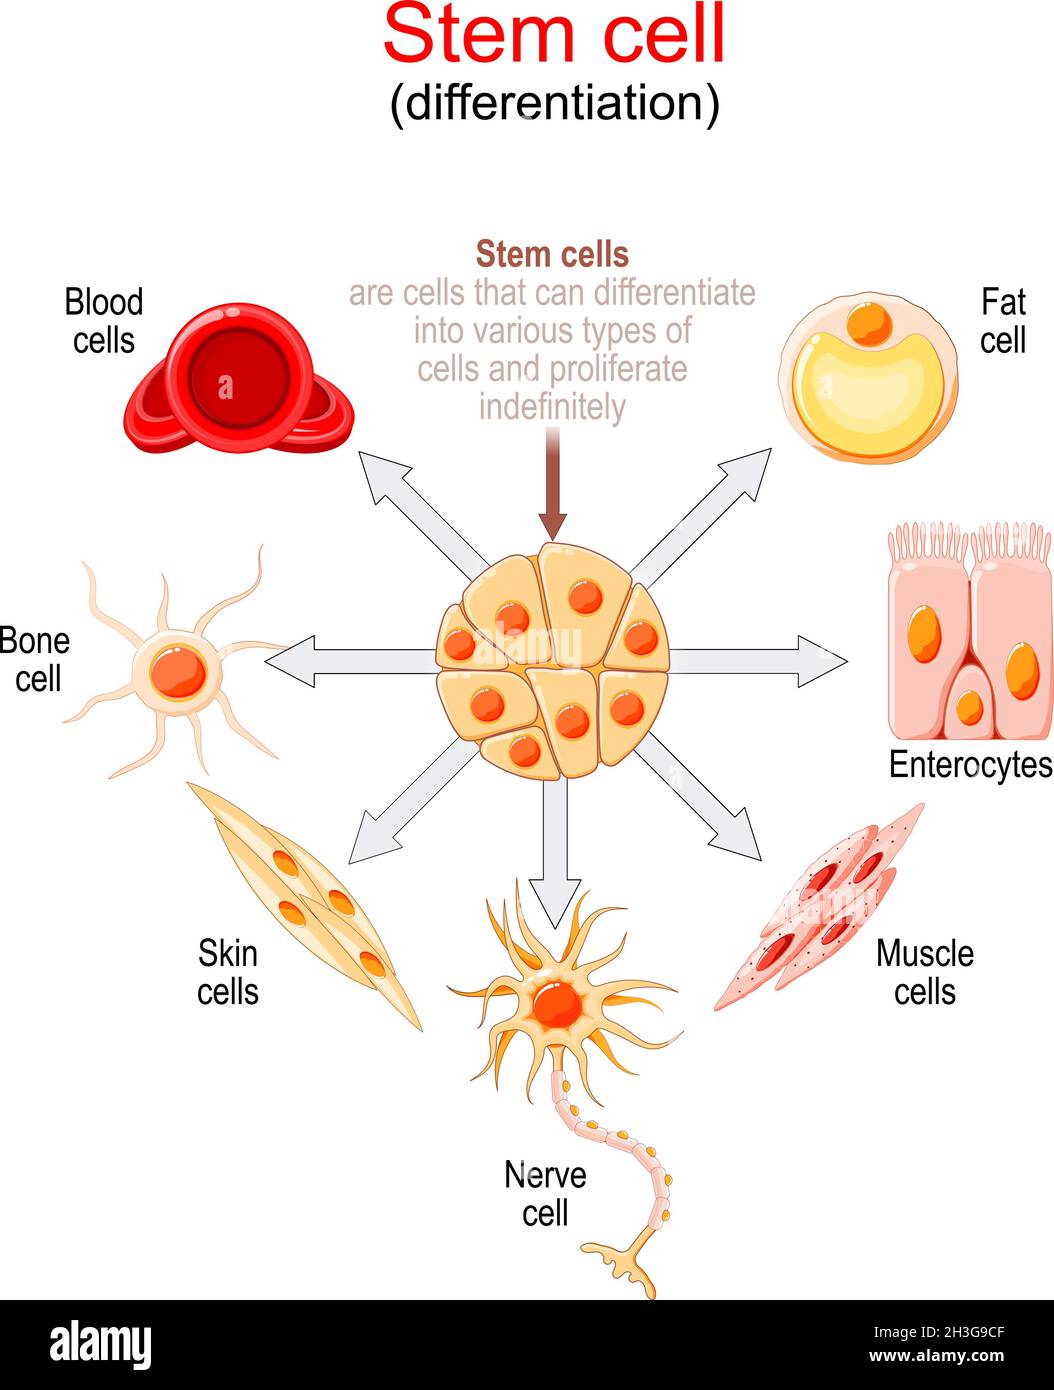 Diferenciación de células madre. Las células madre son células que pueden diferenciarse en varios tipos de células y proliferar indefinidamente. Ilustración del Vector